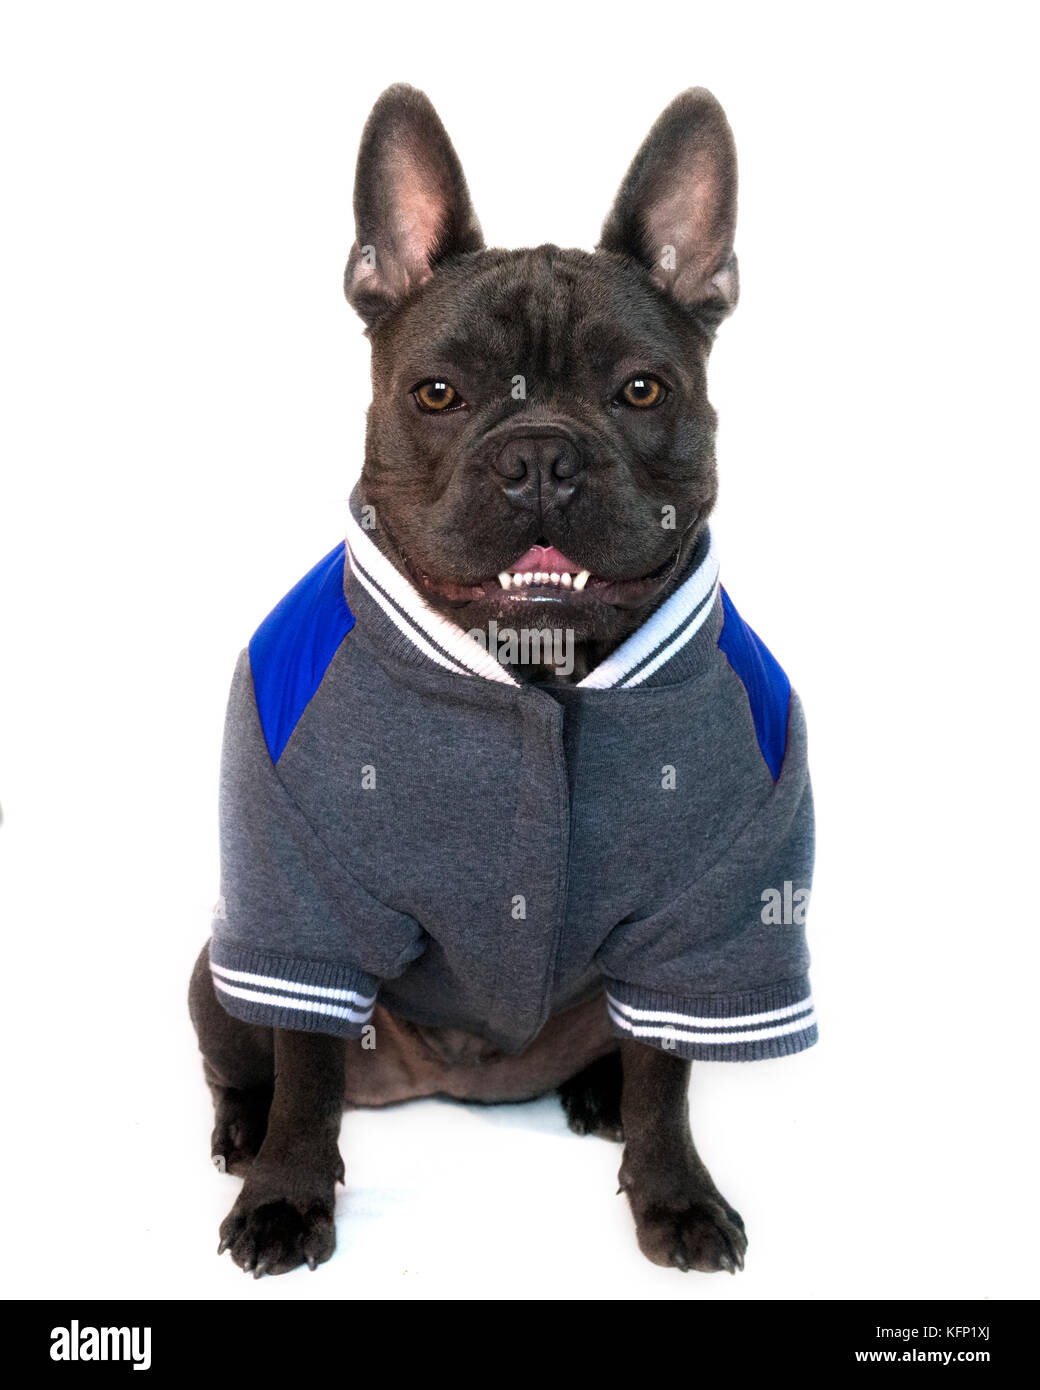 Tipo de mascota, retrato de cuerpo entero de un bulldog francés azul vestido de college high school de deporte, sobre un fondo blanco aisladas, vista frontal ojos l Foto de stock